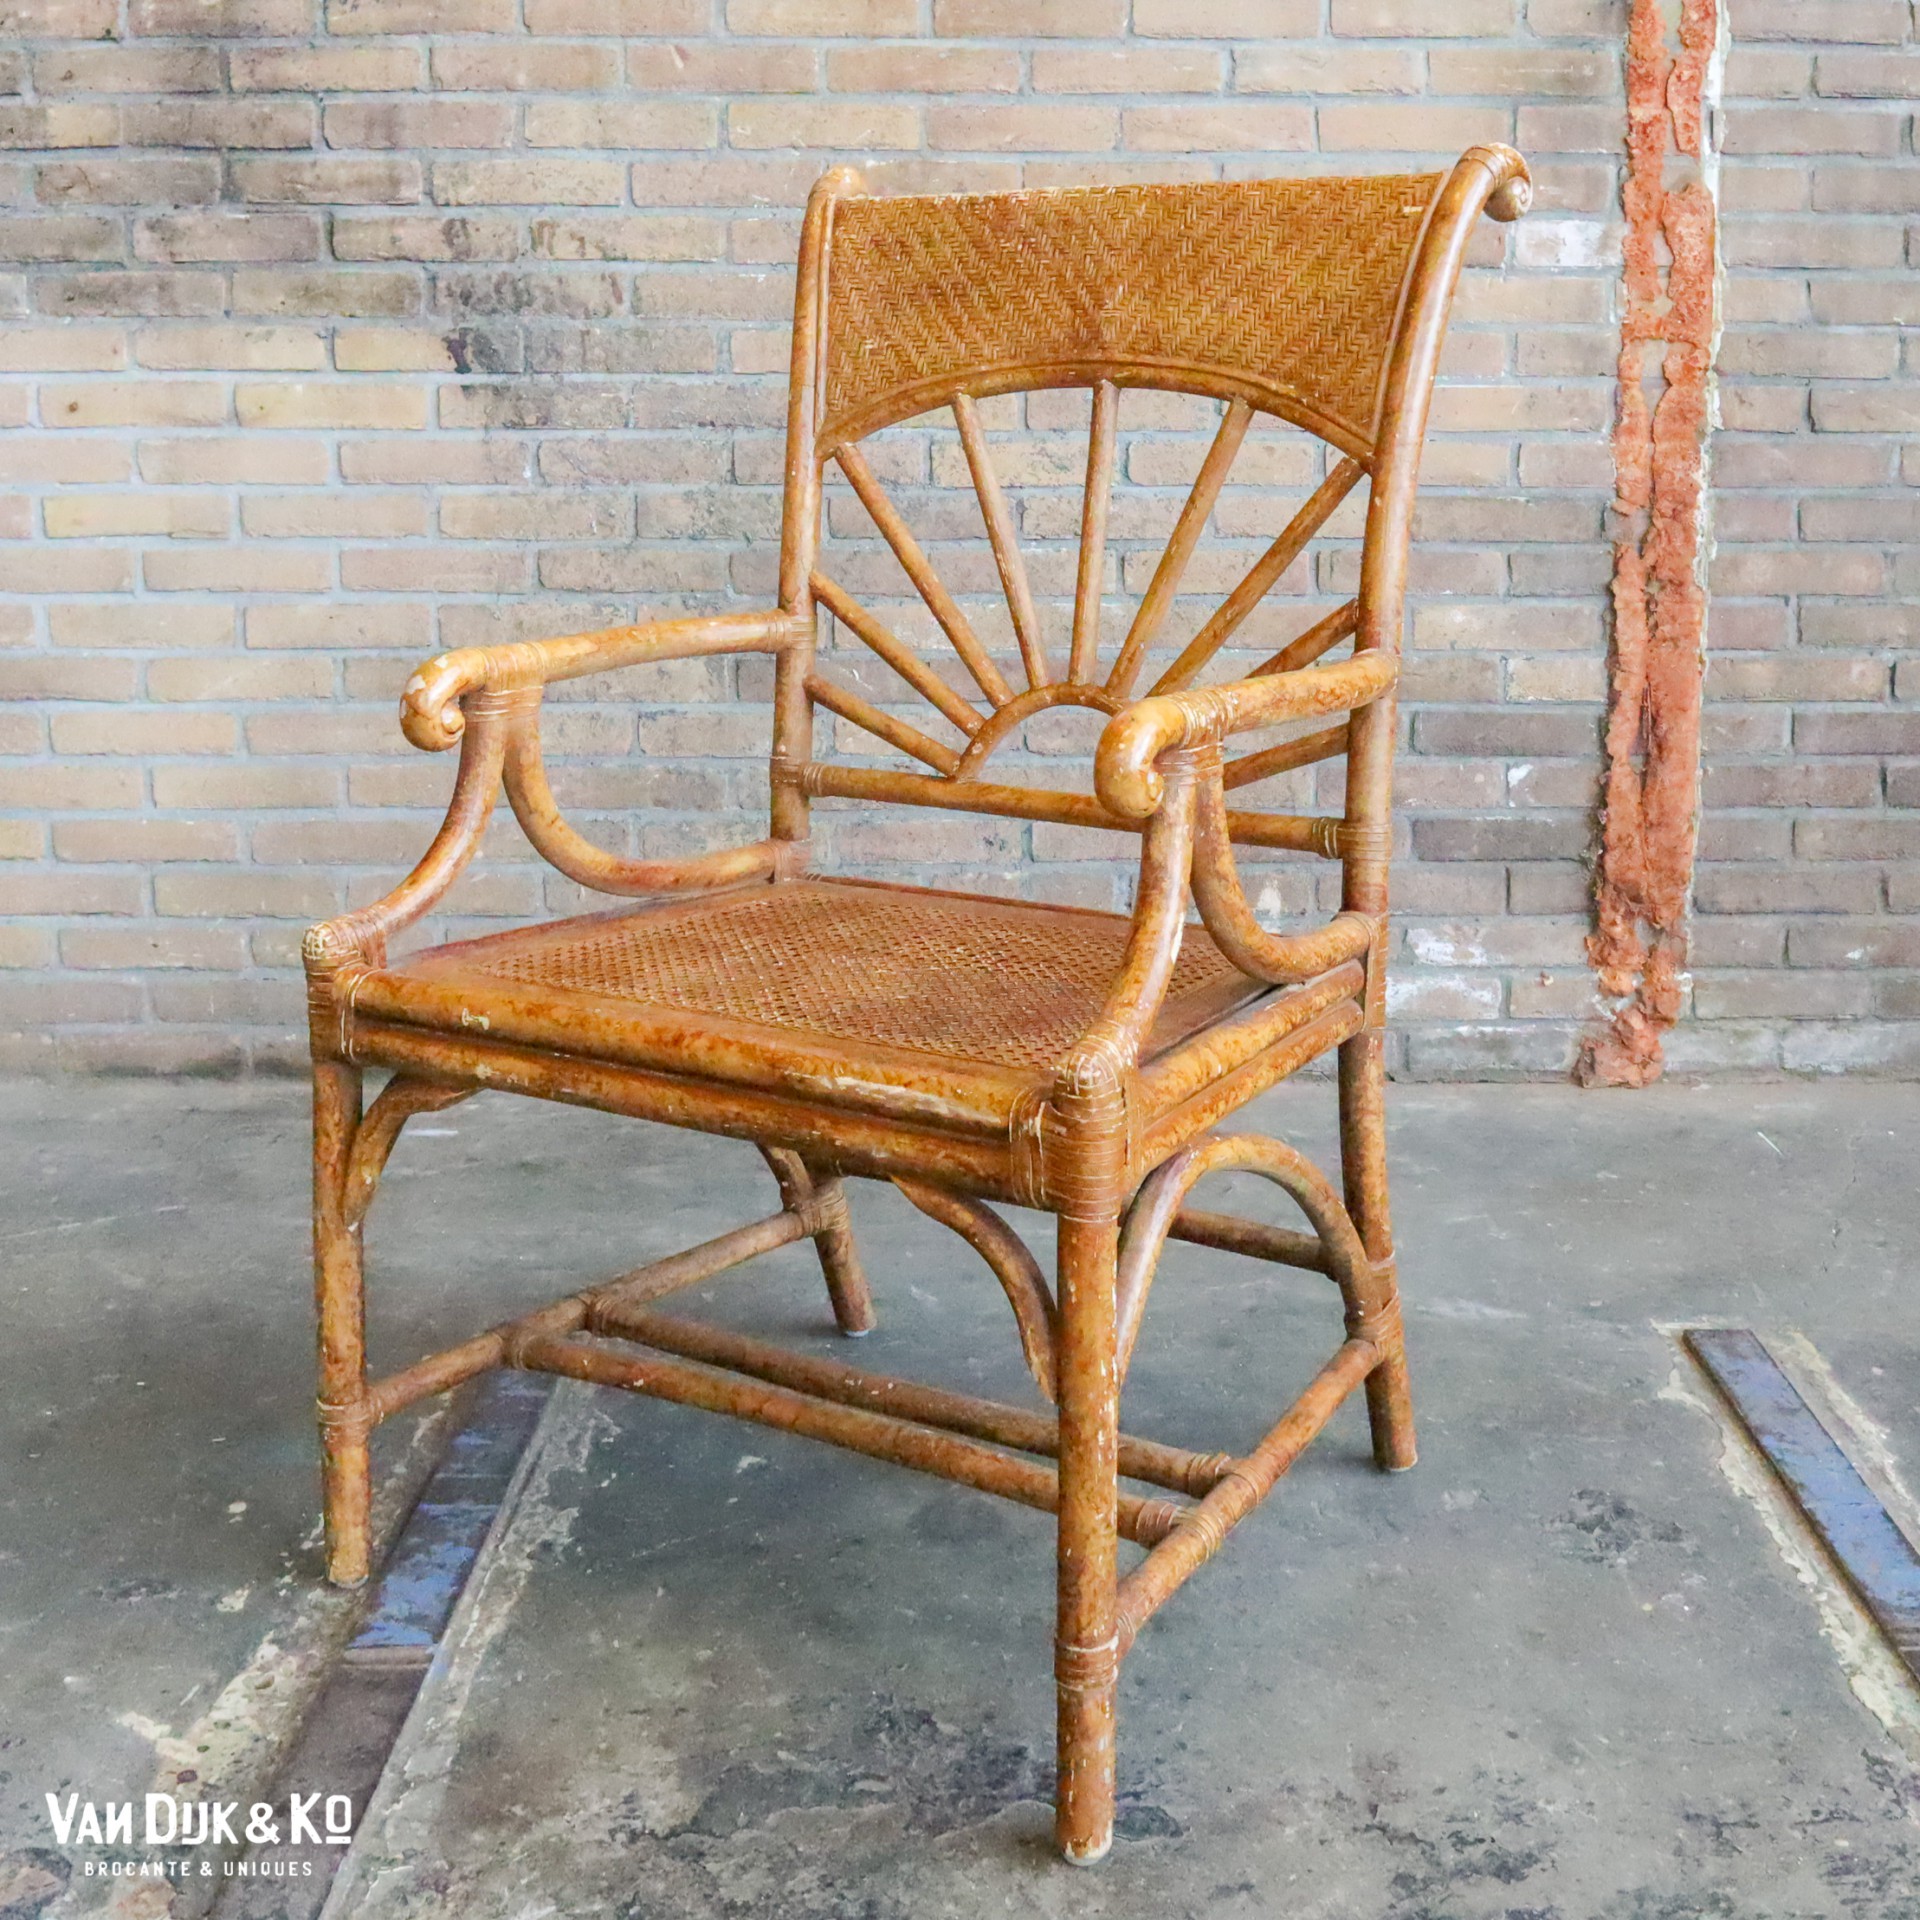 Onrechtvaardig Interpretatie Buskruit Vintage rotan stoel » Van Dijk & Ko